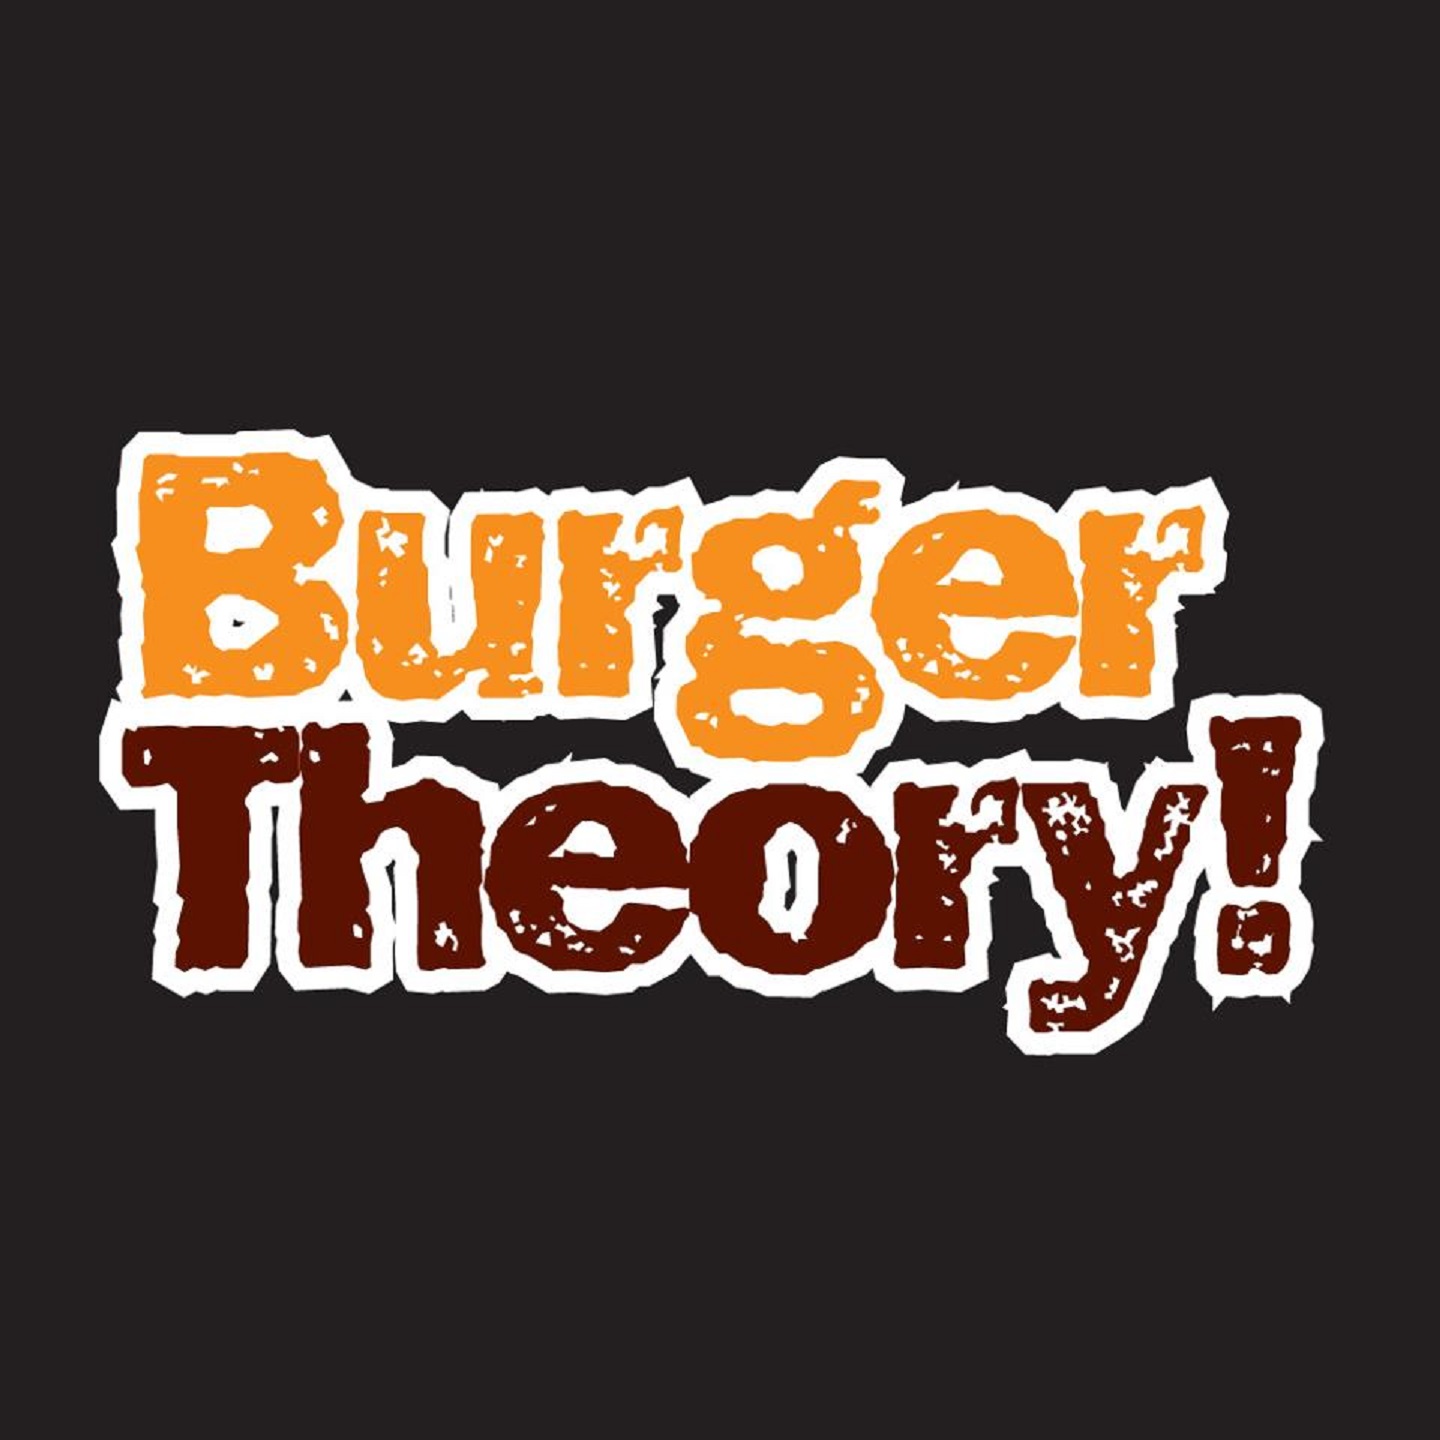 Burger Theory